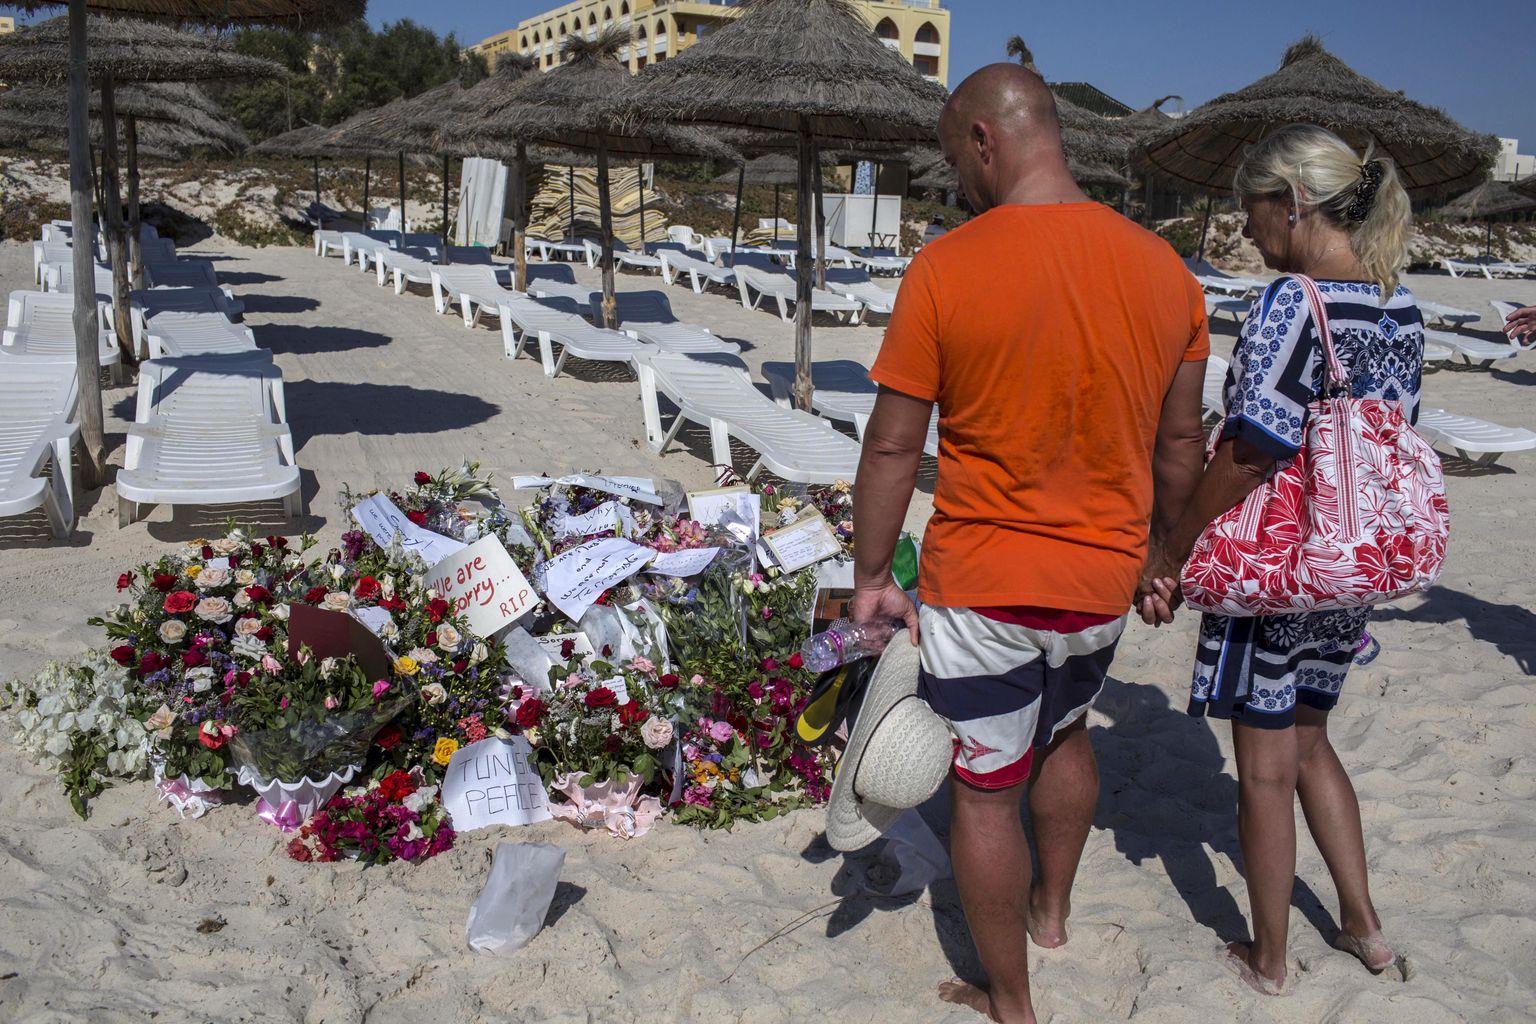 Imperial Marhaba hotelli randa püstitatud mälestuspaik terrorirünnakus hukkunutele